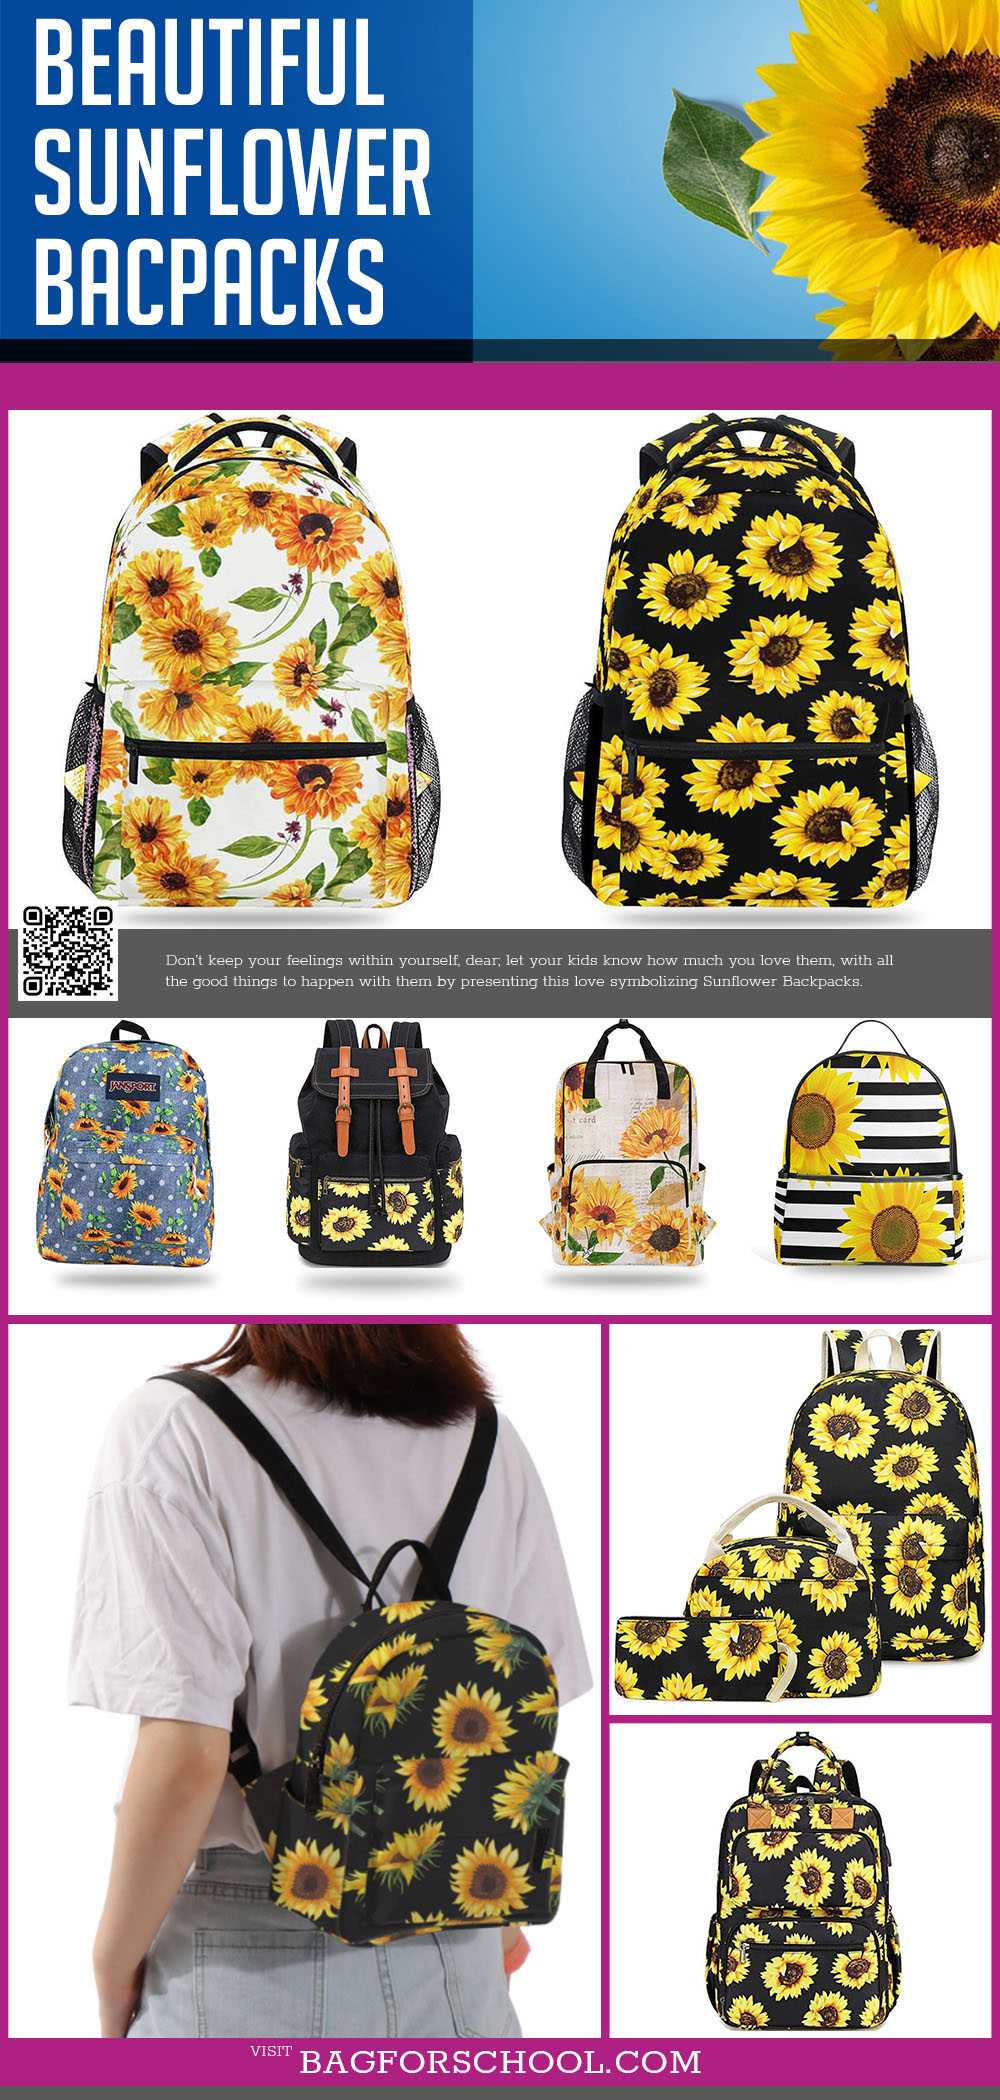 Sunflower Backpacks